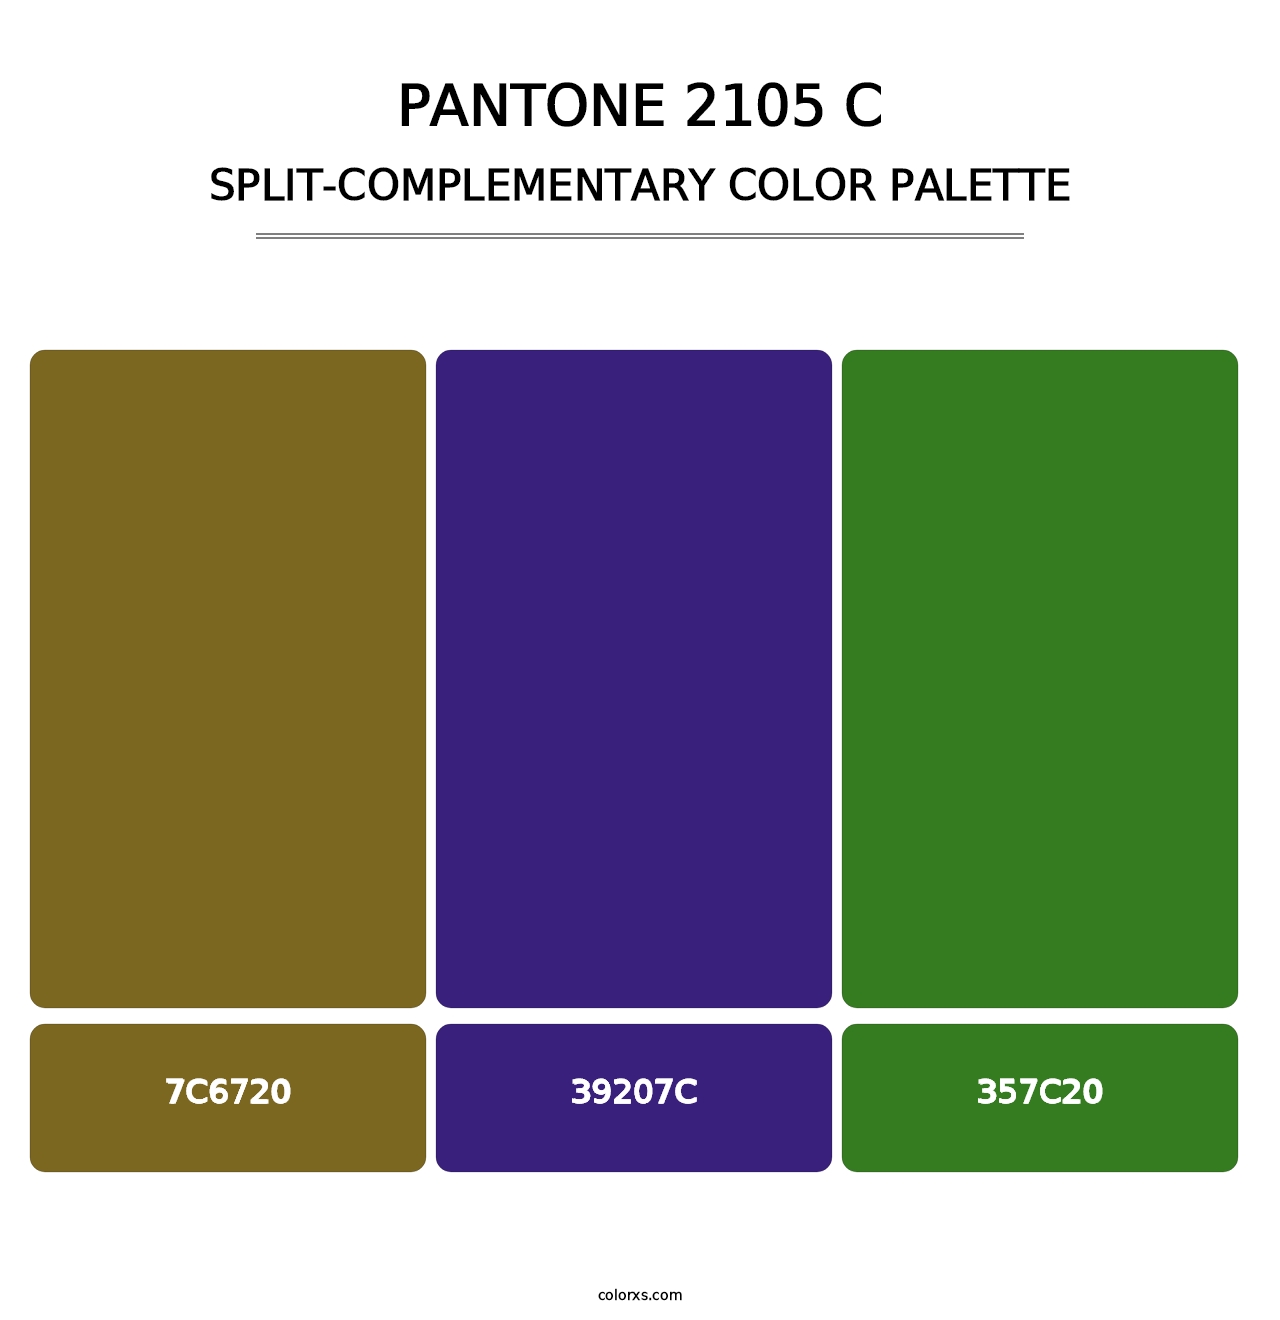 PANTONE 2105 C - Split-Complementary Color Palette